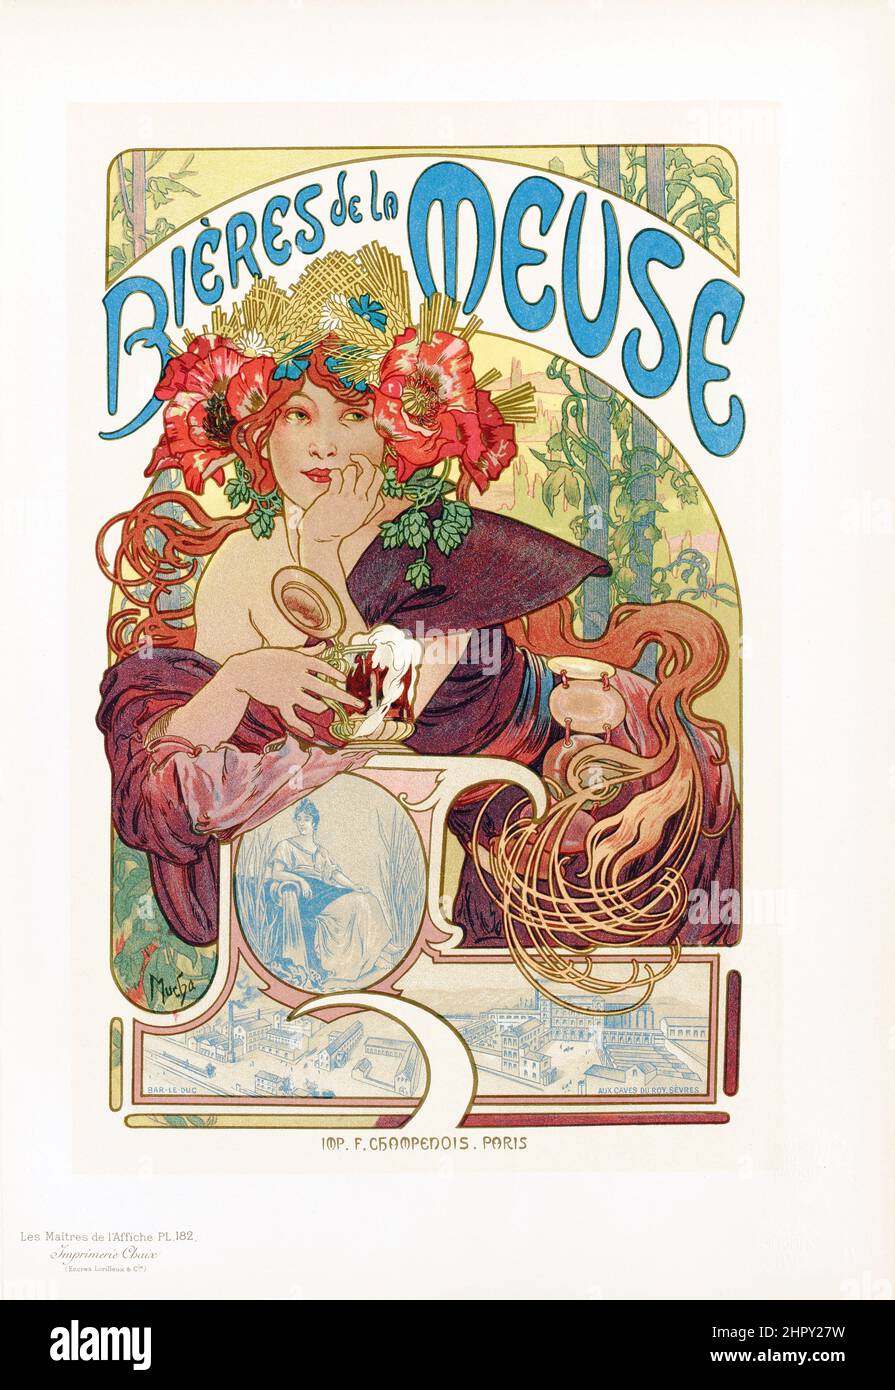 Maitres de l'affiche Vol 4 - Plate 182 - Alfons Mucha, 1895 - Bieres de la Meuse. Poster Art Nouveau. Foto Stock